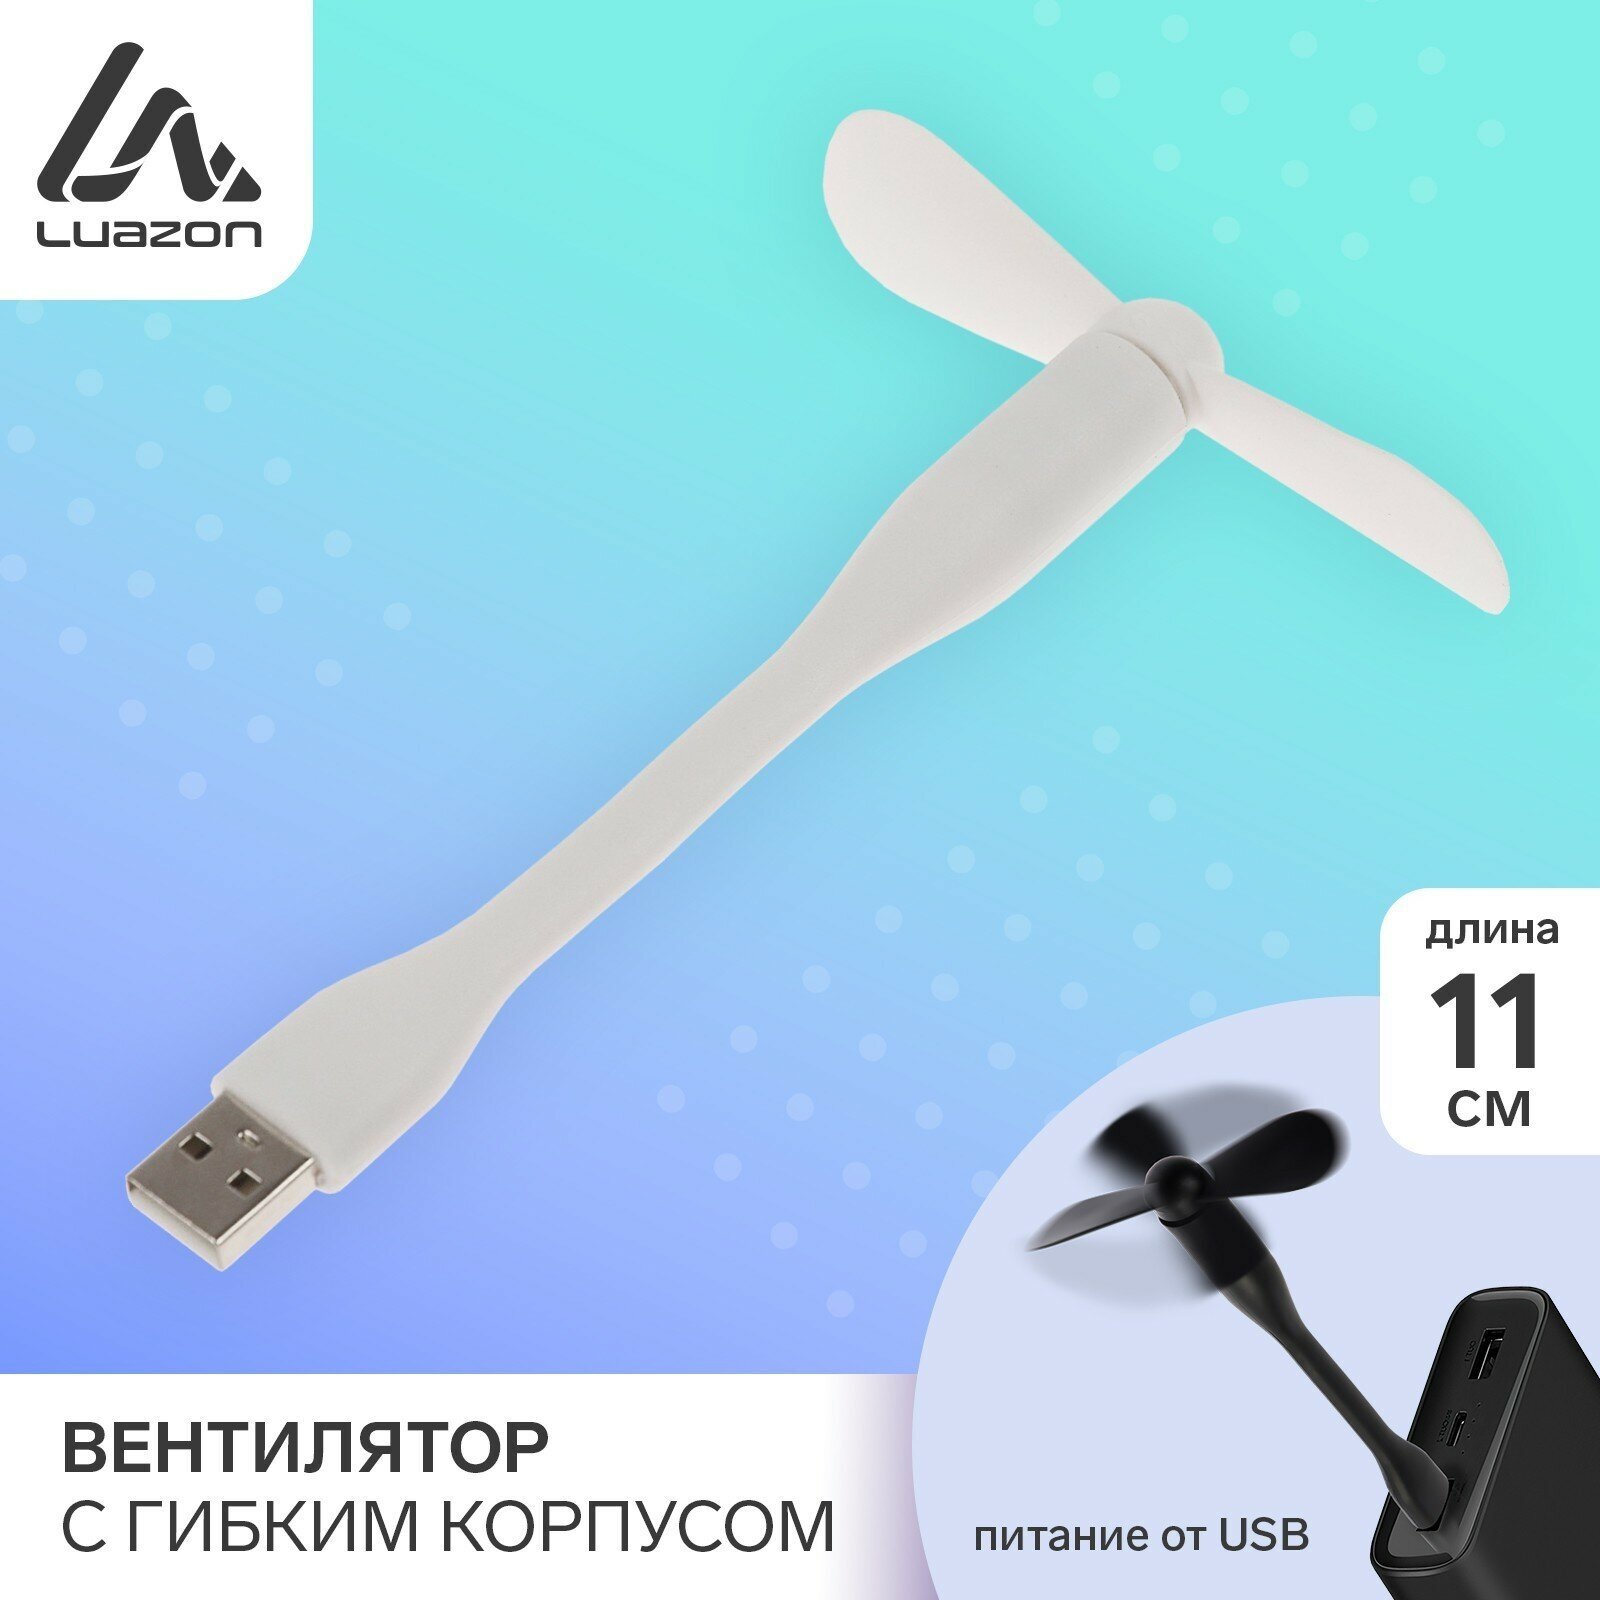 Вентилятор с гибким корпусом LuazON LOF-05, USB, 11 см, белый (1шт.)